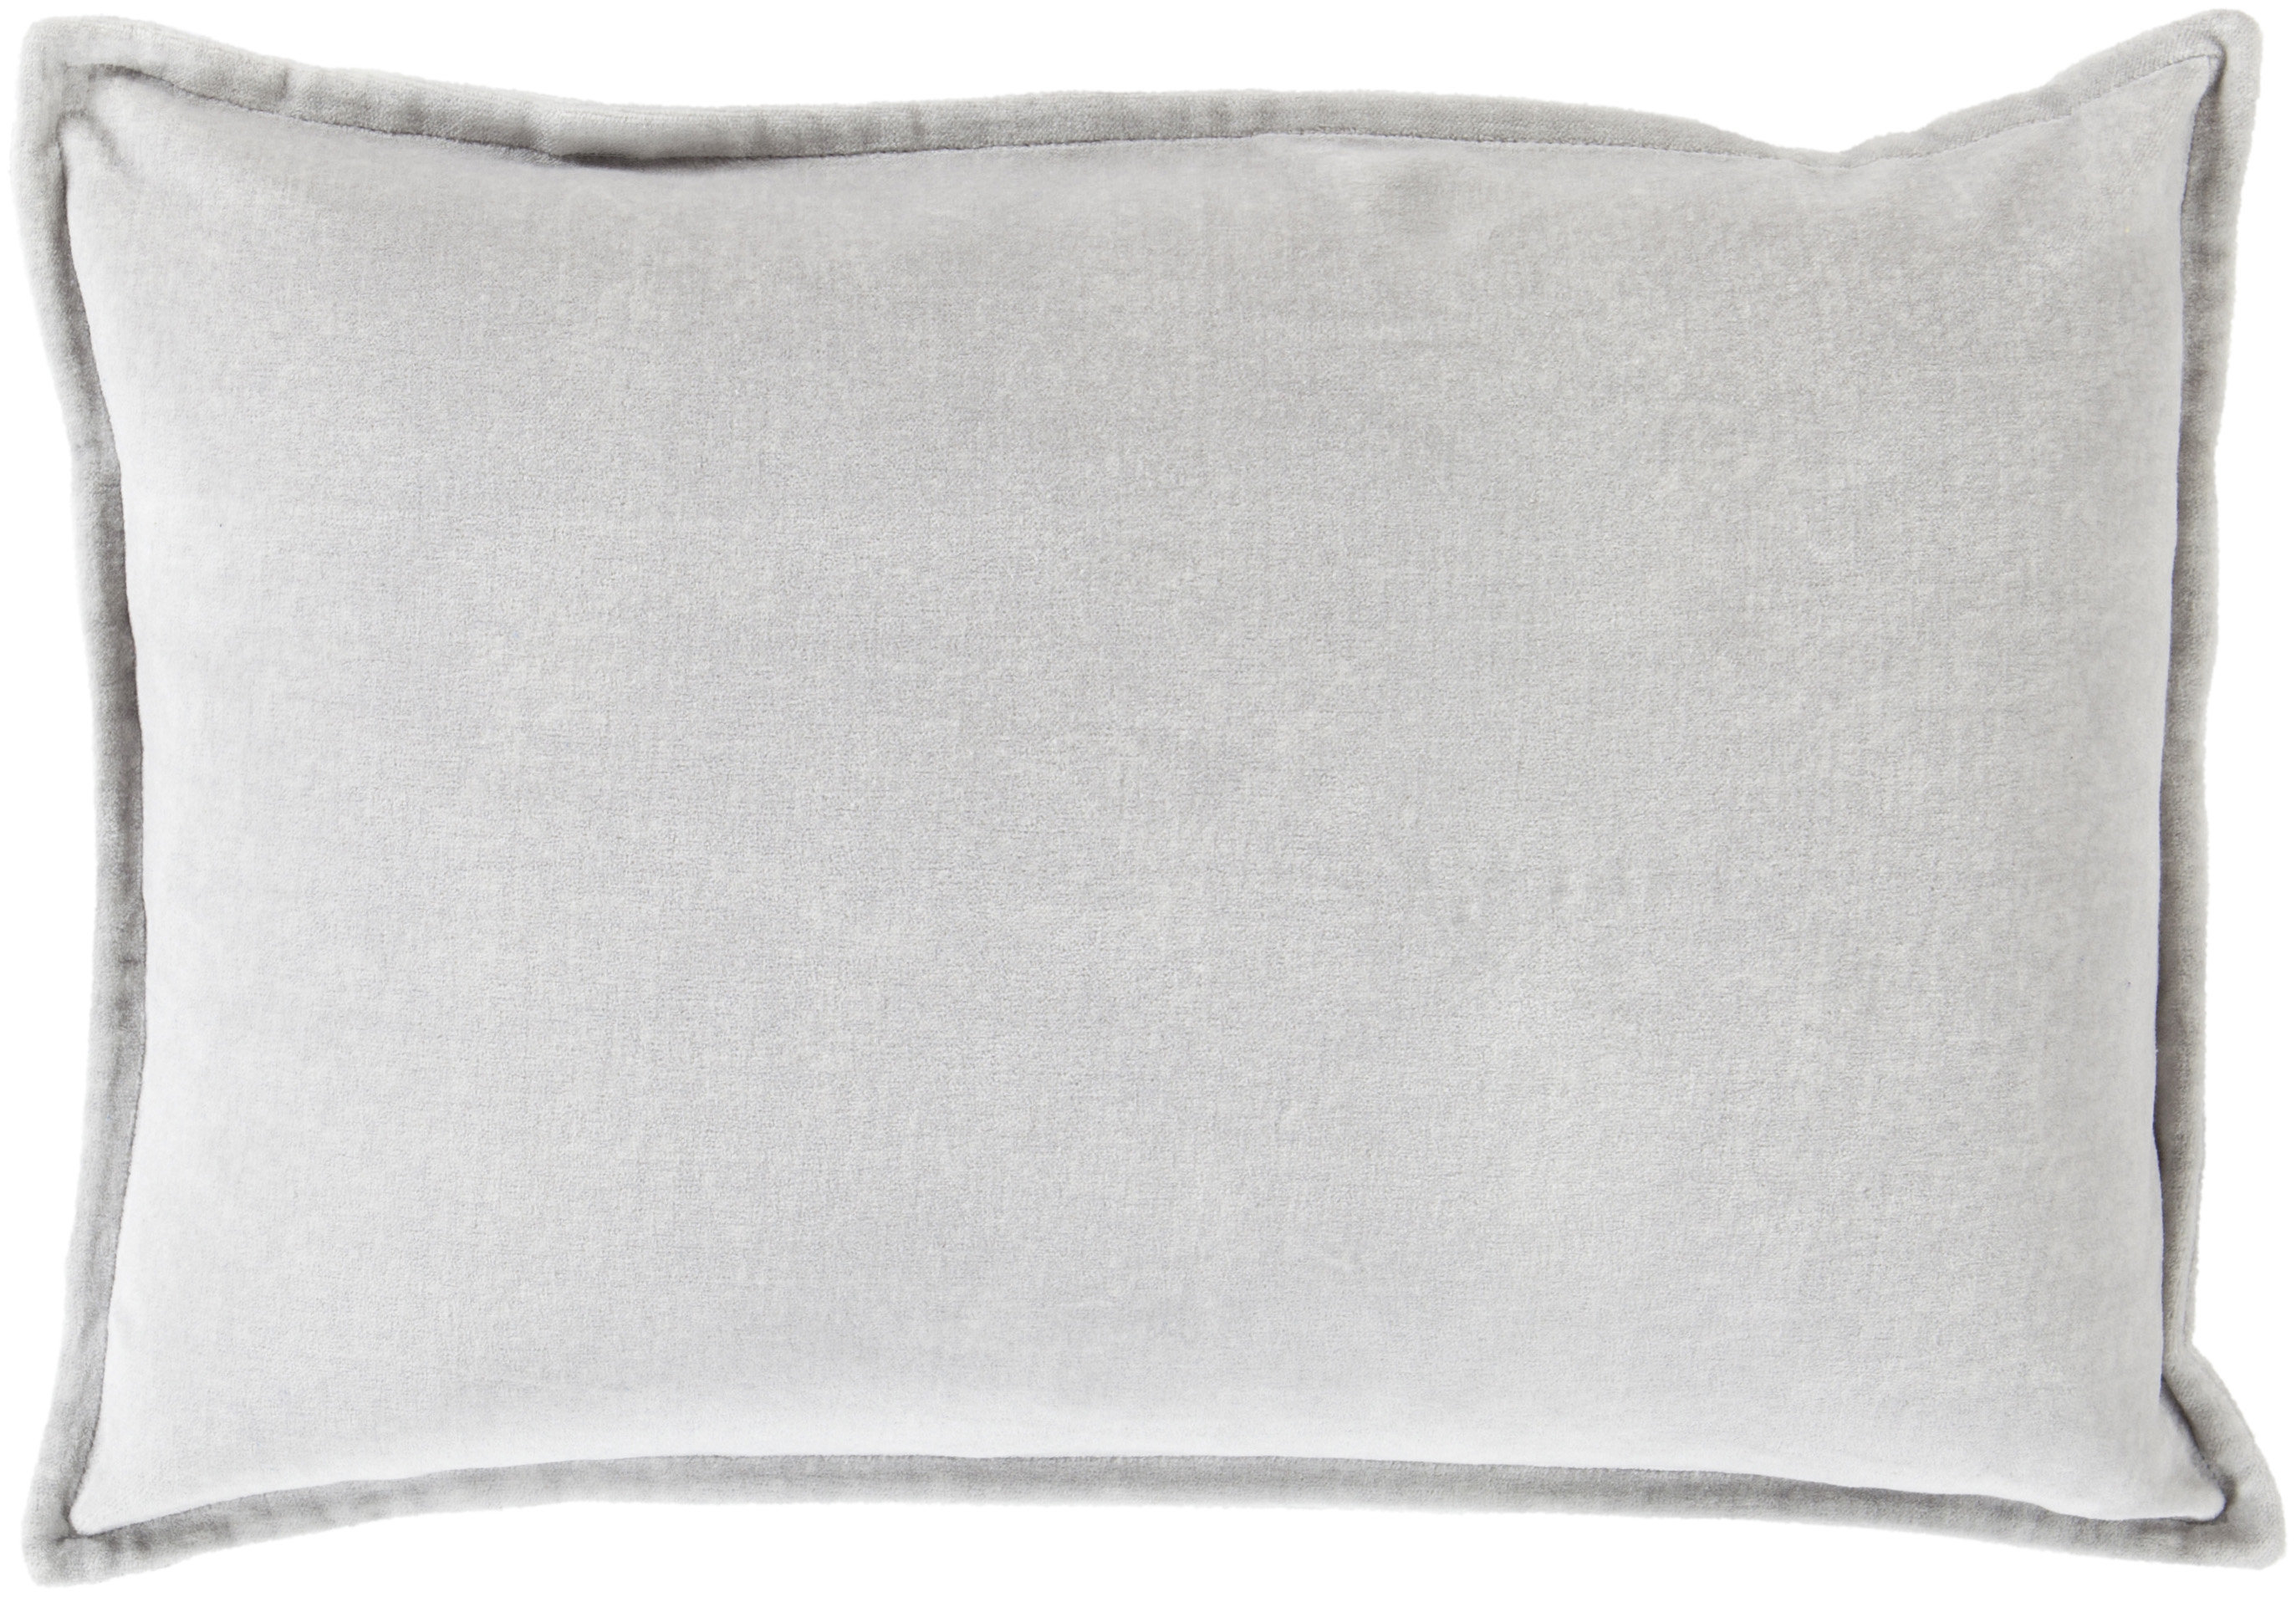 Details about   Pillowcase 40X40 Velvet Velvet Pillow Case Decorative Cushion Pillow in 10 sizes covering... show original title 